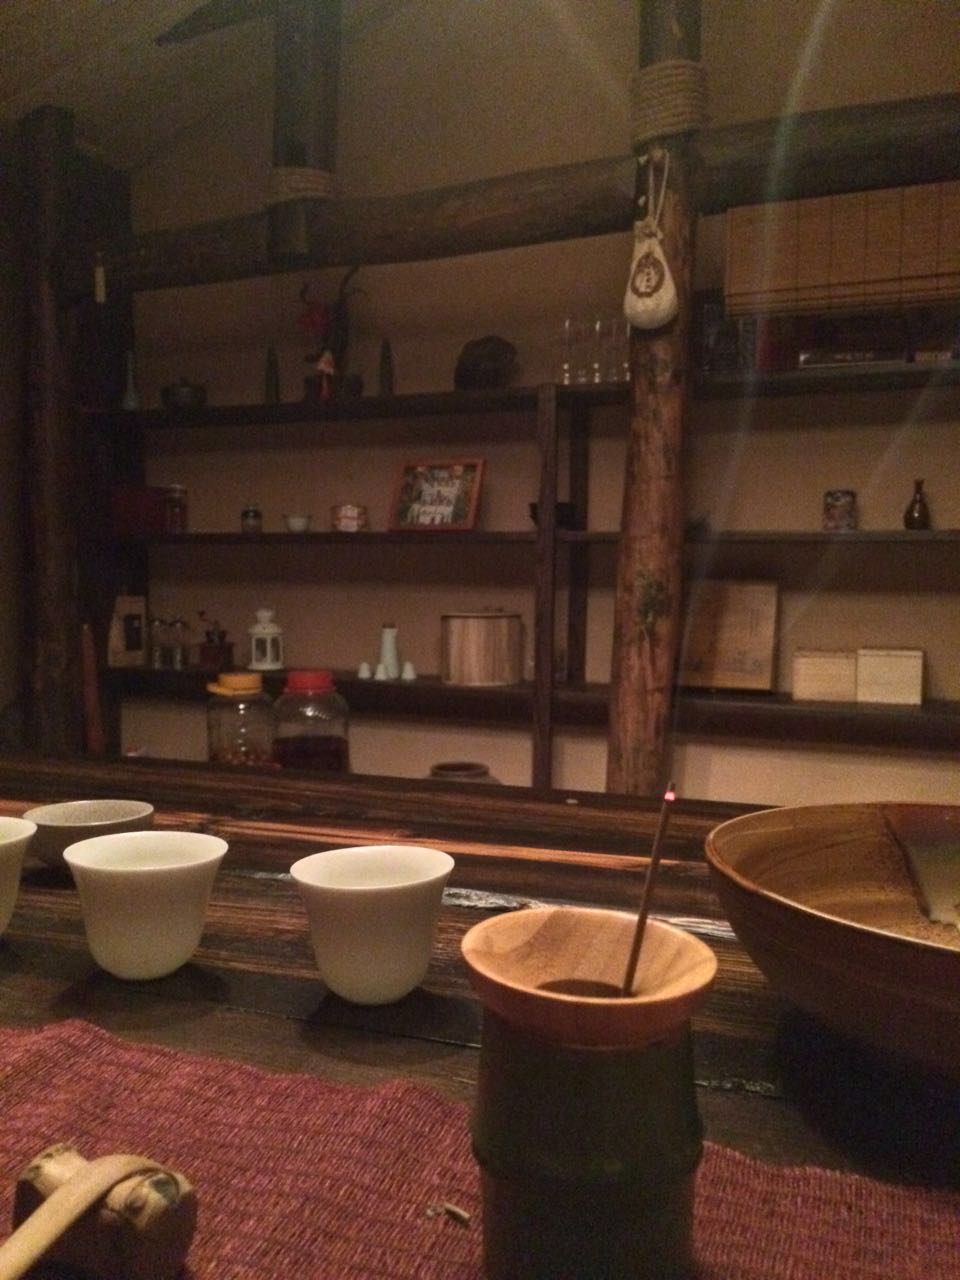 Tearoom